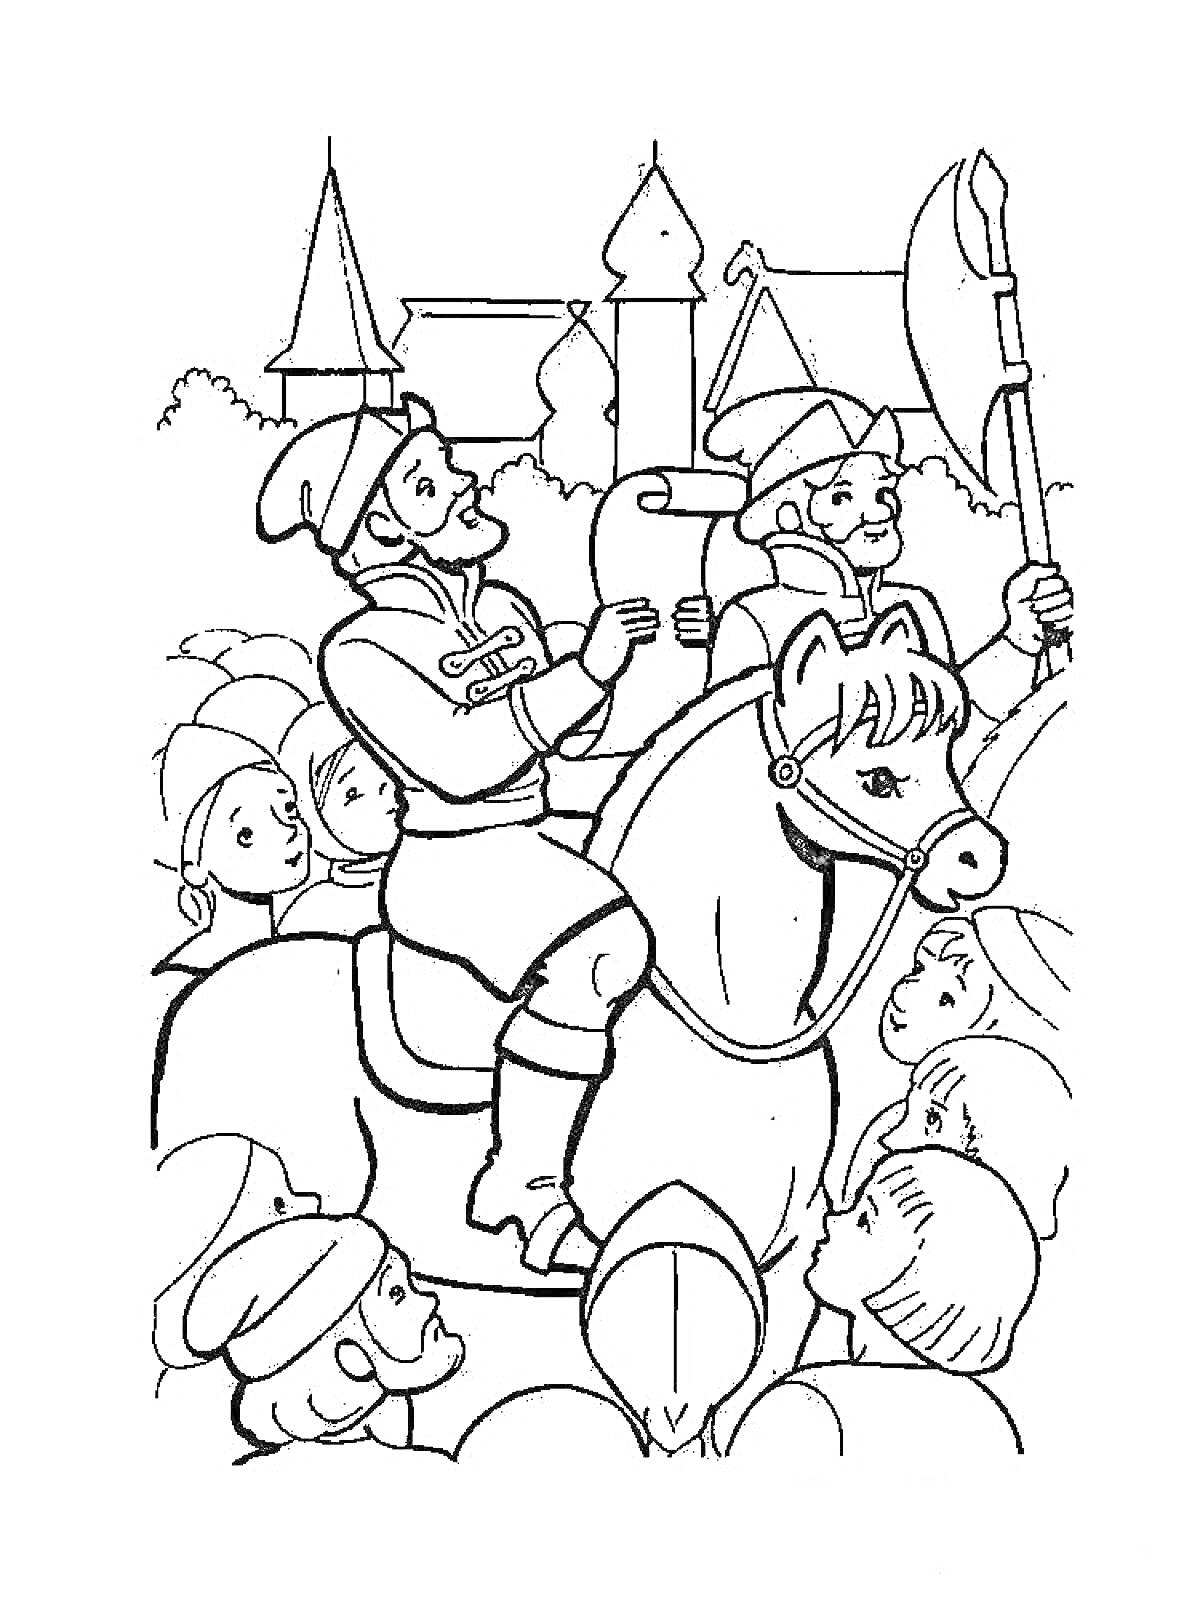 Раскраска Всадник на лошади зачитывает свиток перед людьми возле замка